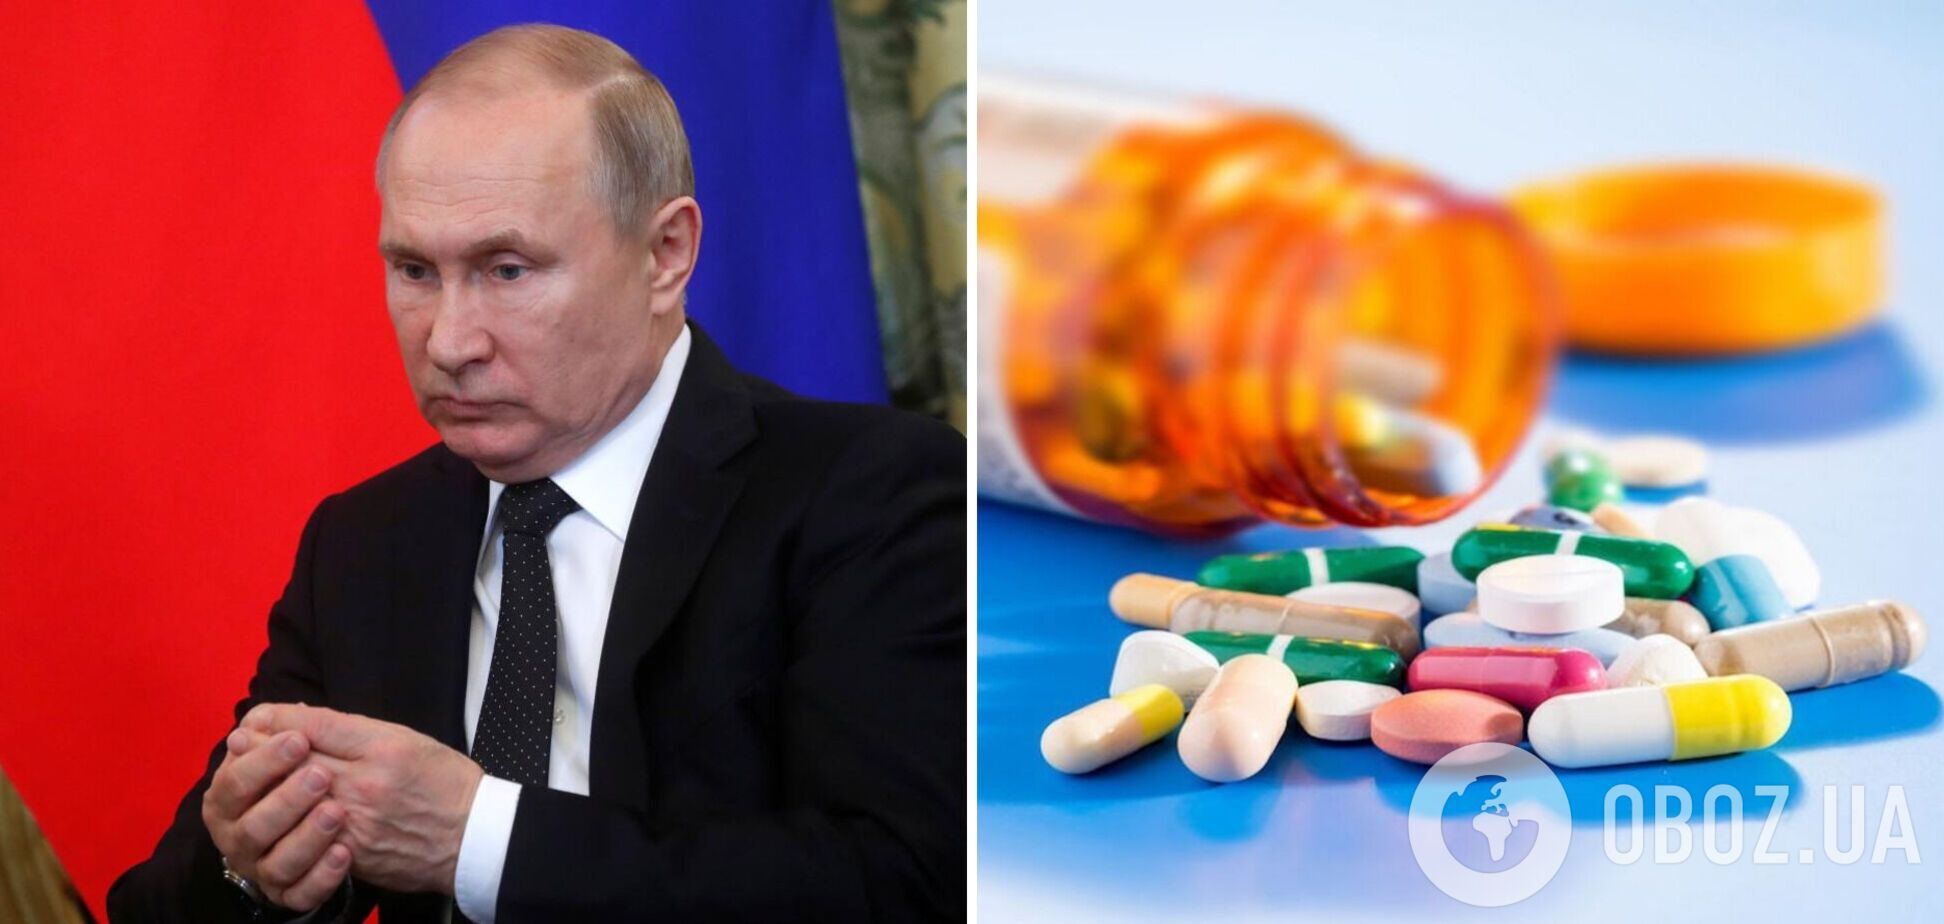 'Деменция, рак, болезнь Паркинсона': Daily Mail со ссылкой на разведку написала о 'стероидной ярости' Путина